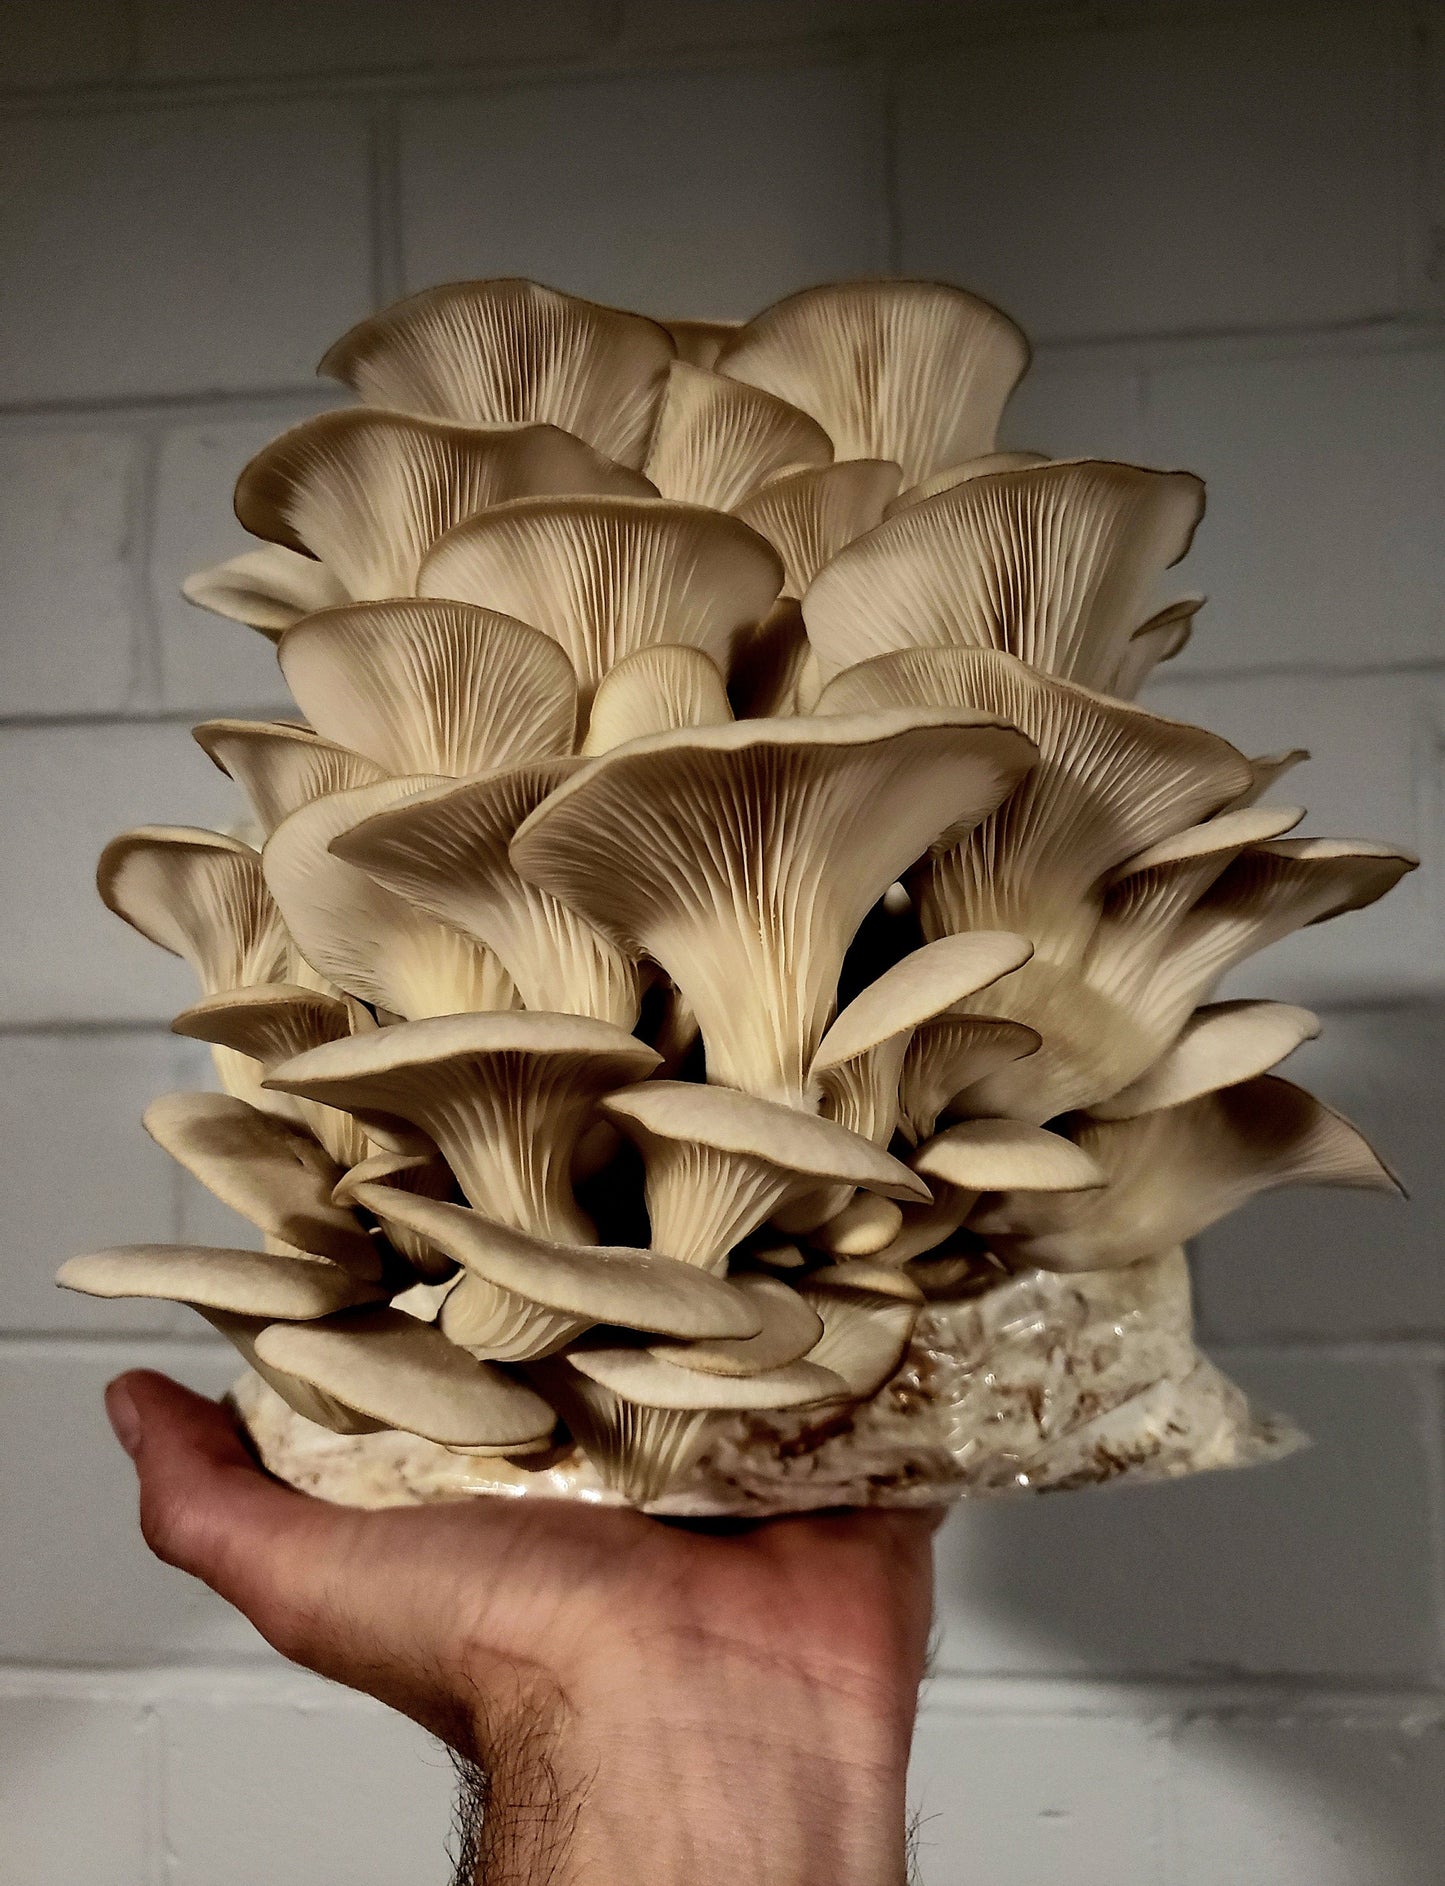 Oyster Mushroom Grow Kit (6+ Varieties)